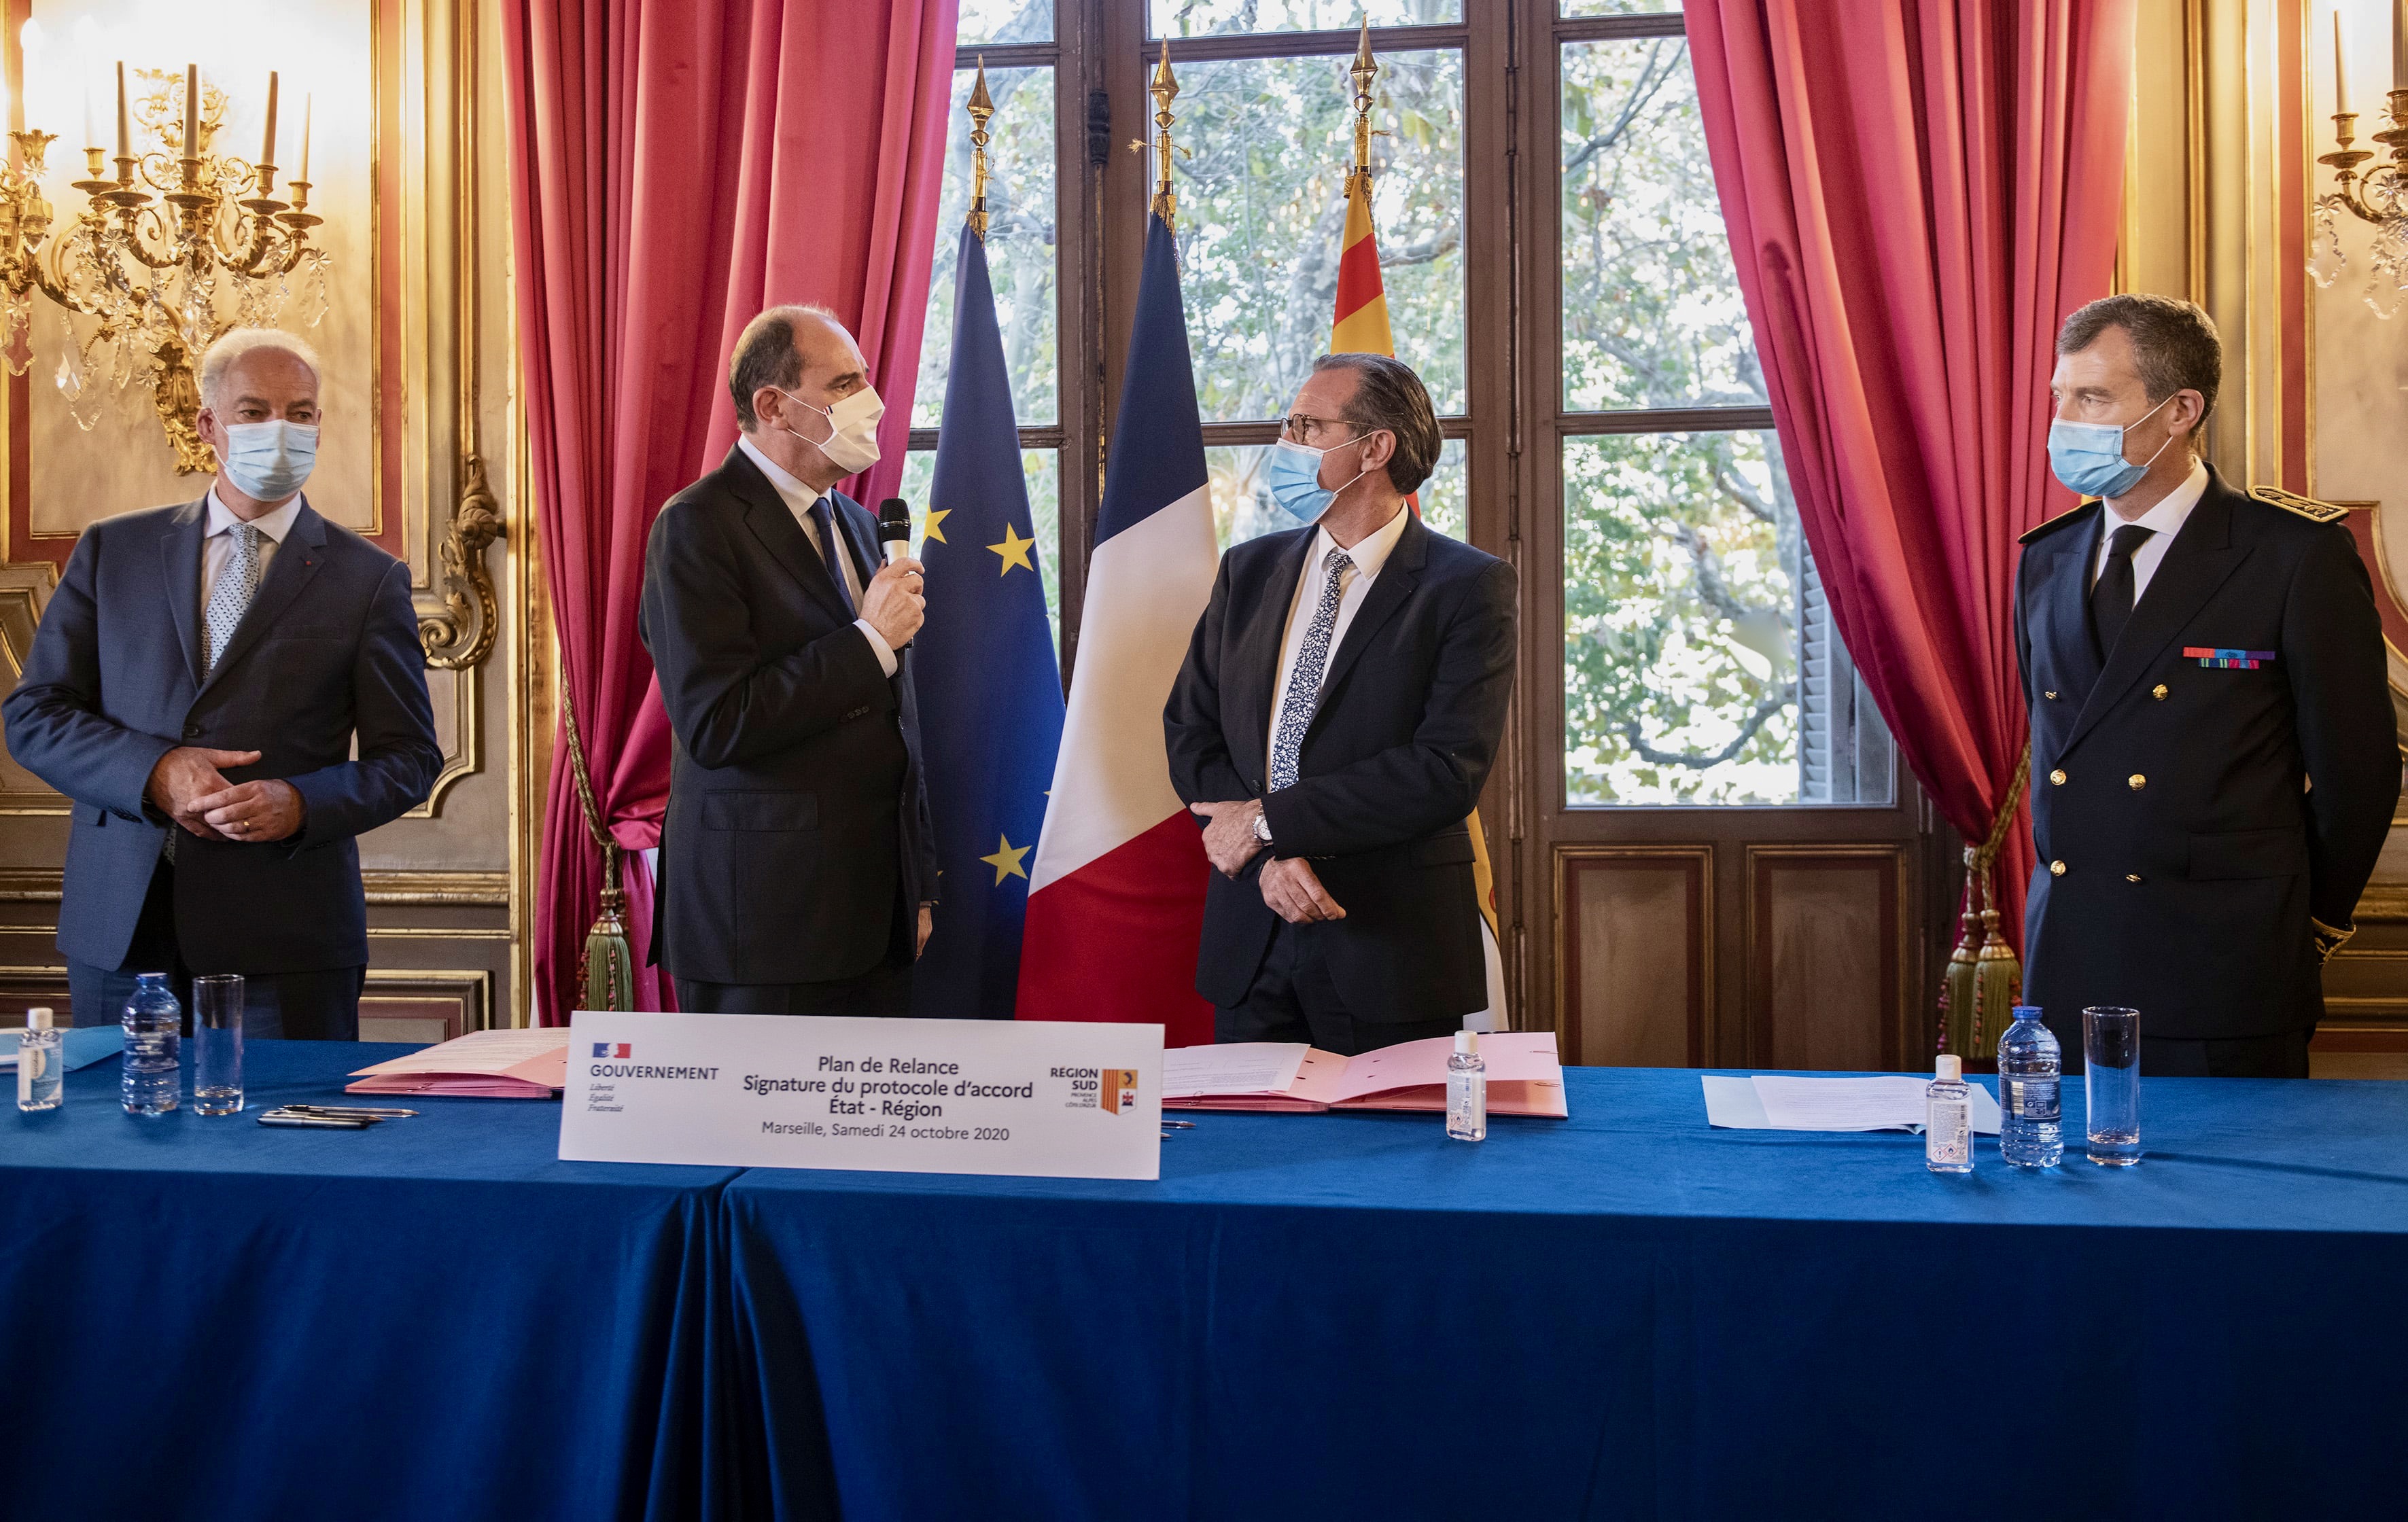 Le 24 octobre 2020, le Premier ministre Jean Castex et Renaud Muselier ont signé en préfecture de Région un protocole d’accord de 64 M€ pour financer des projets concrets en région PACA. ©CA